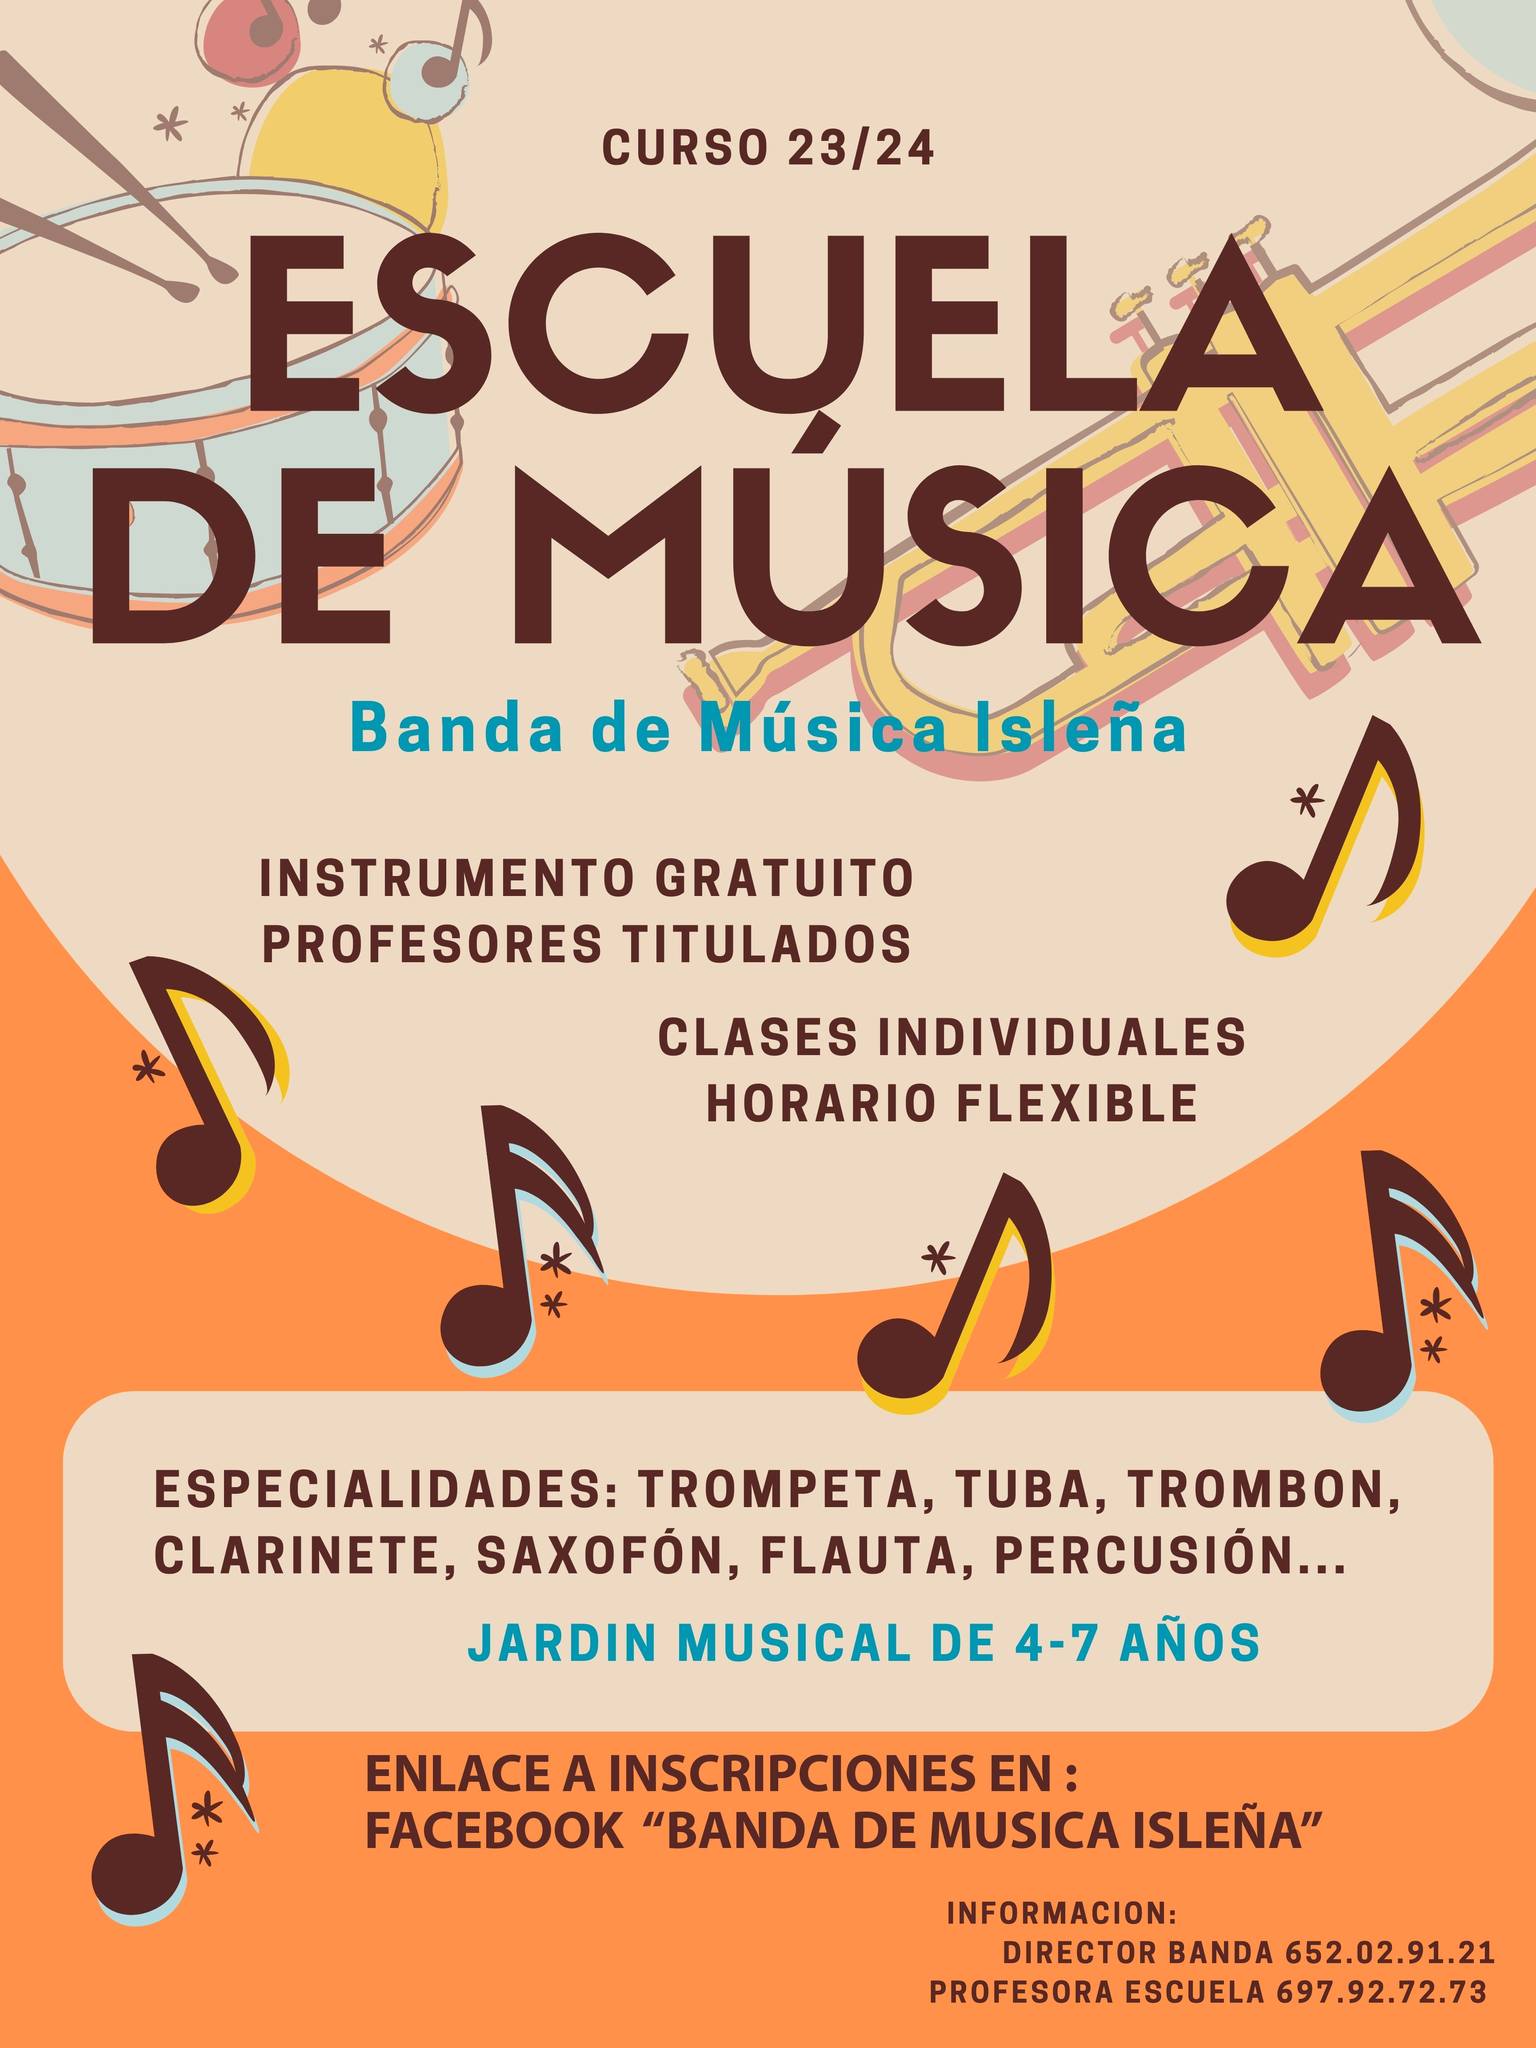 Escuela de Música de la Banda de Música Isleña. Curso 23/24